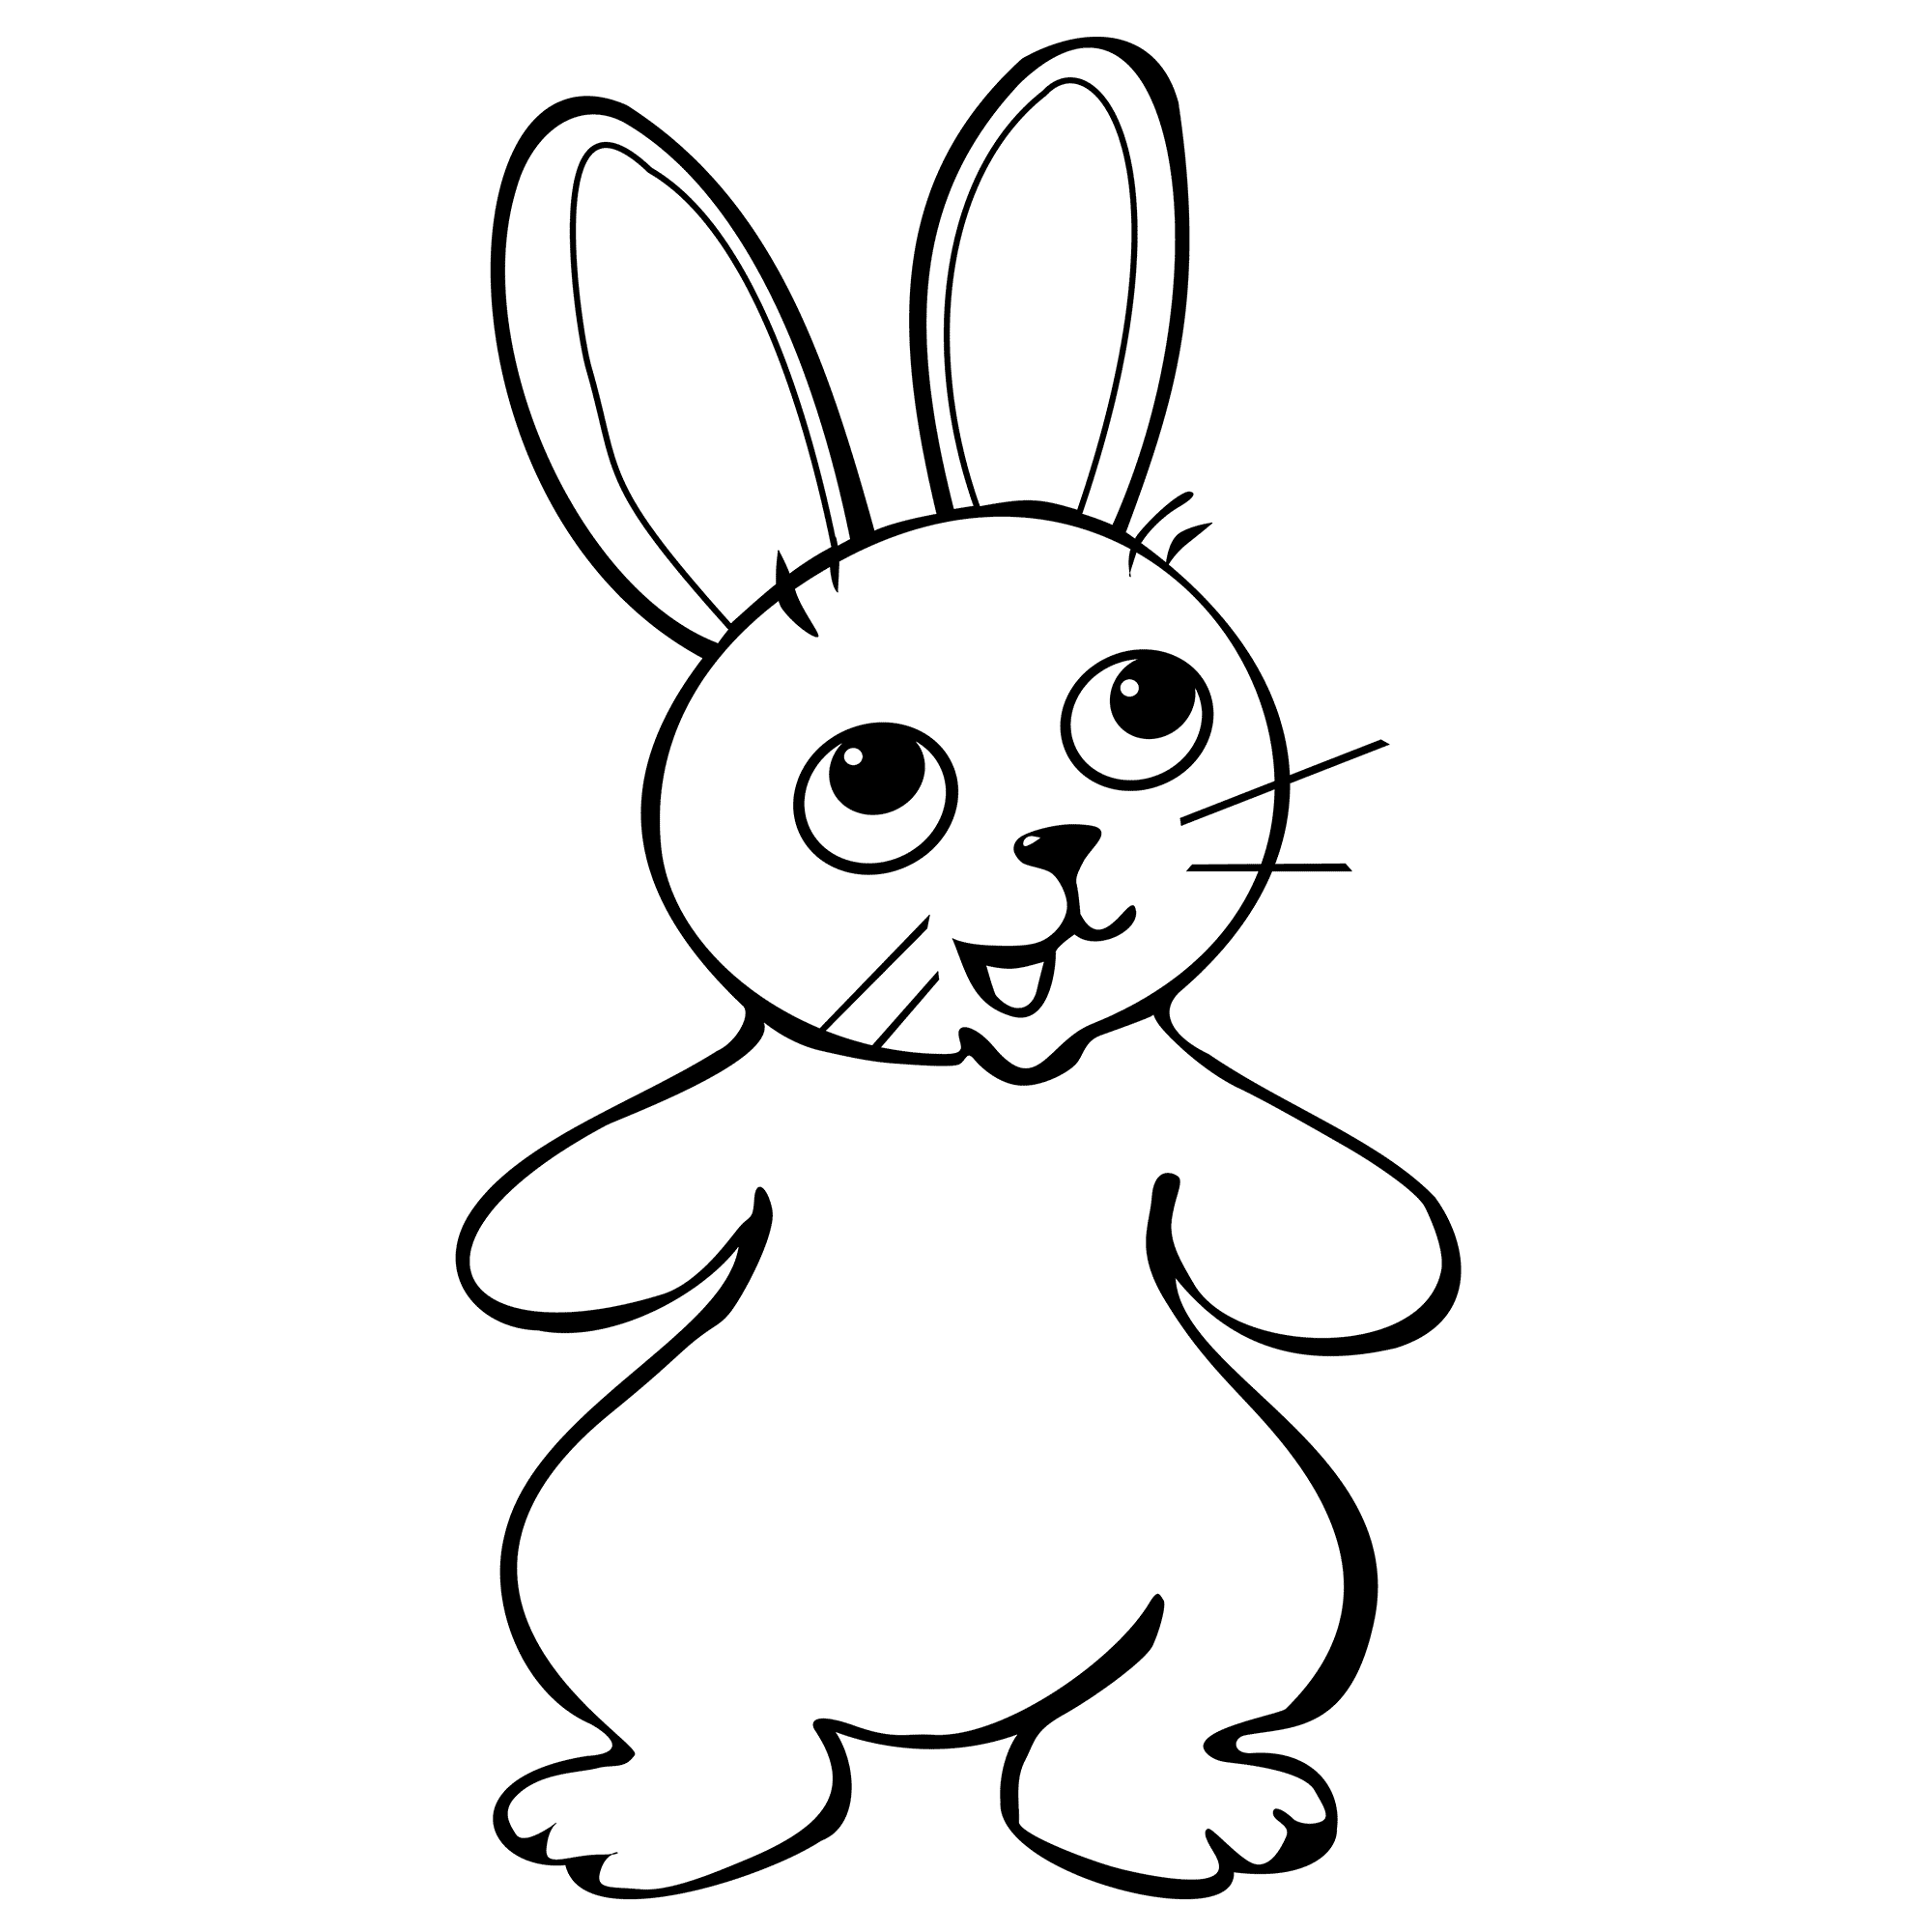 bunny-drawing-printable-printable-world-holiday